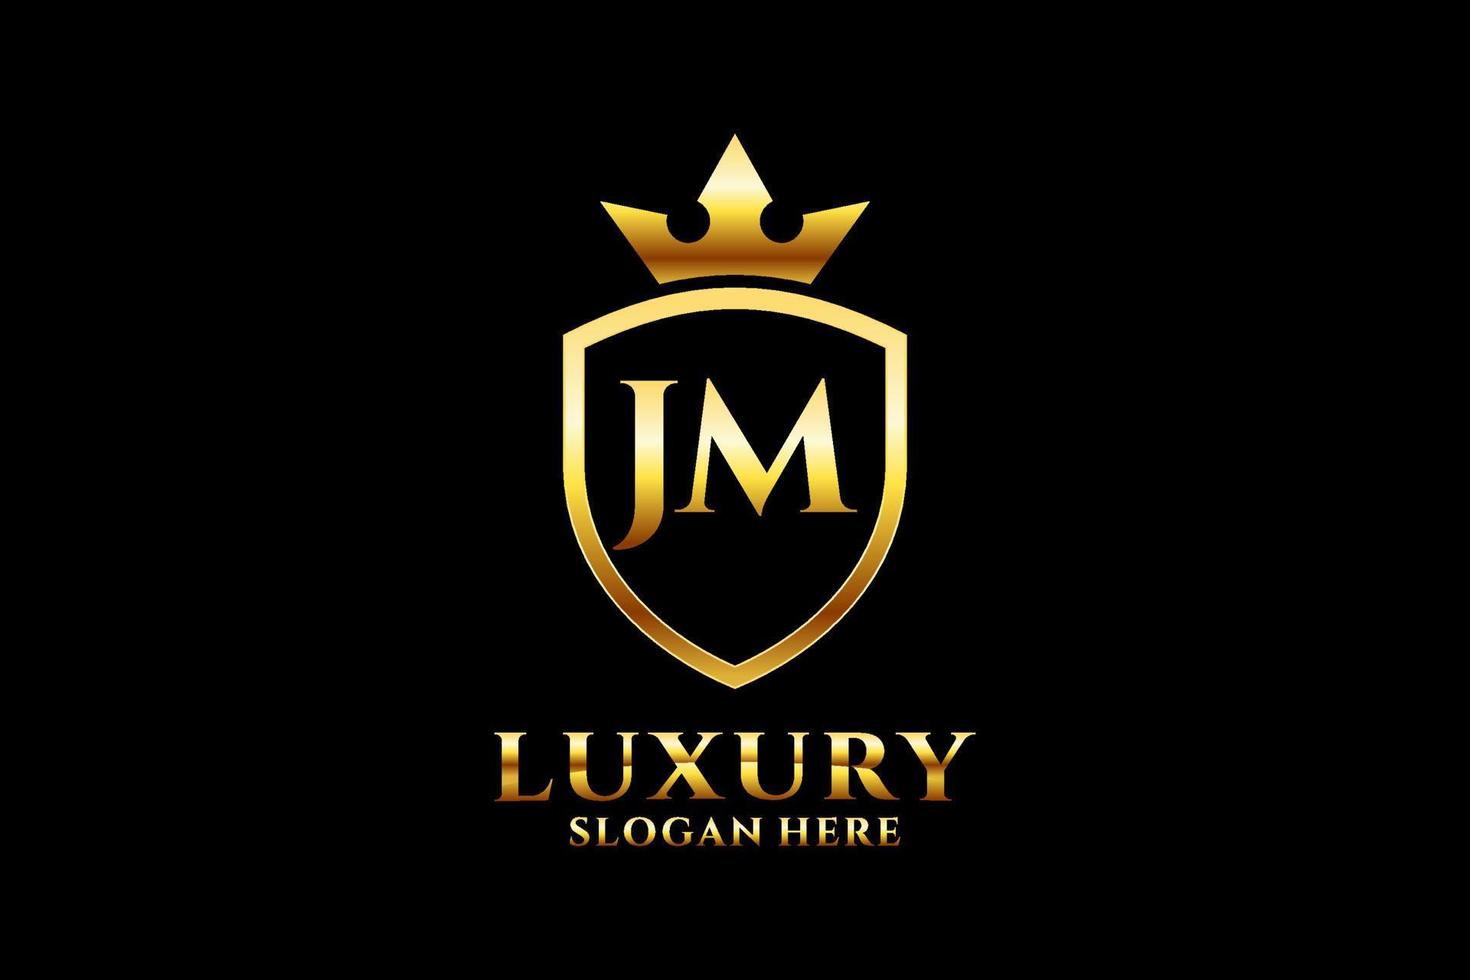 eerste jm elegant luxe monogram logo of insigne sjabloon met scrollt en Koninklijk kroon - perfect voor luxueus branding projecten vector